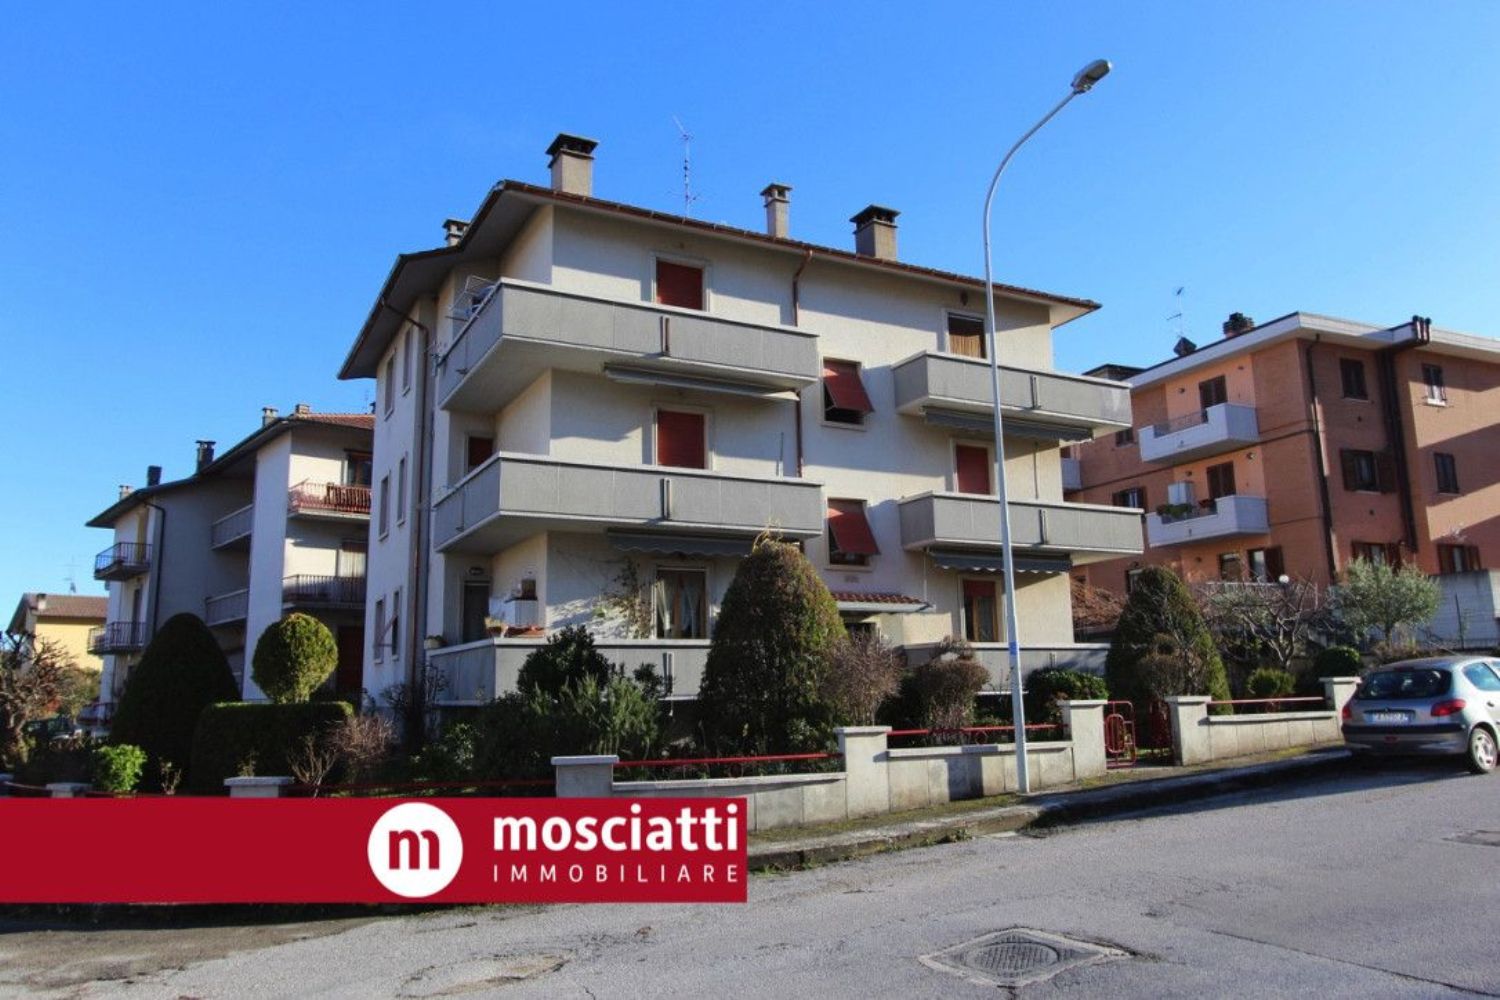 Appartamento in vendita a Esanatoglia, 3 locali, prezzo € 75.000 | PortaleAgenzieImmobiliari.it